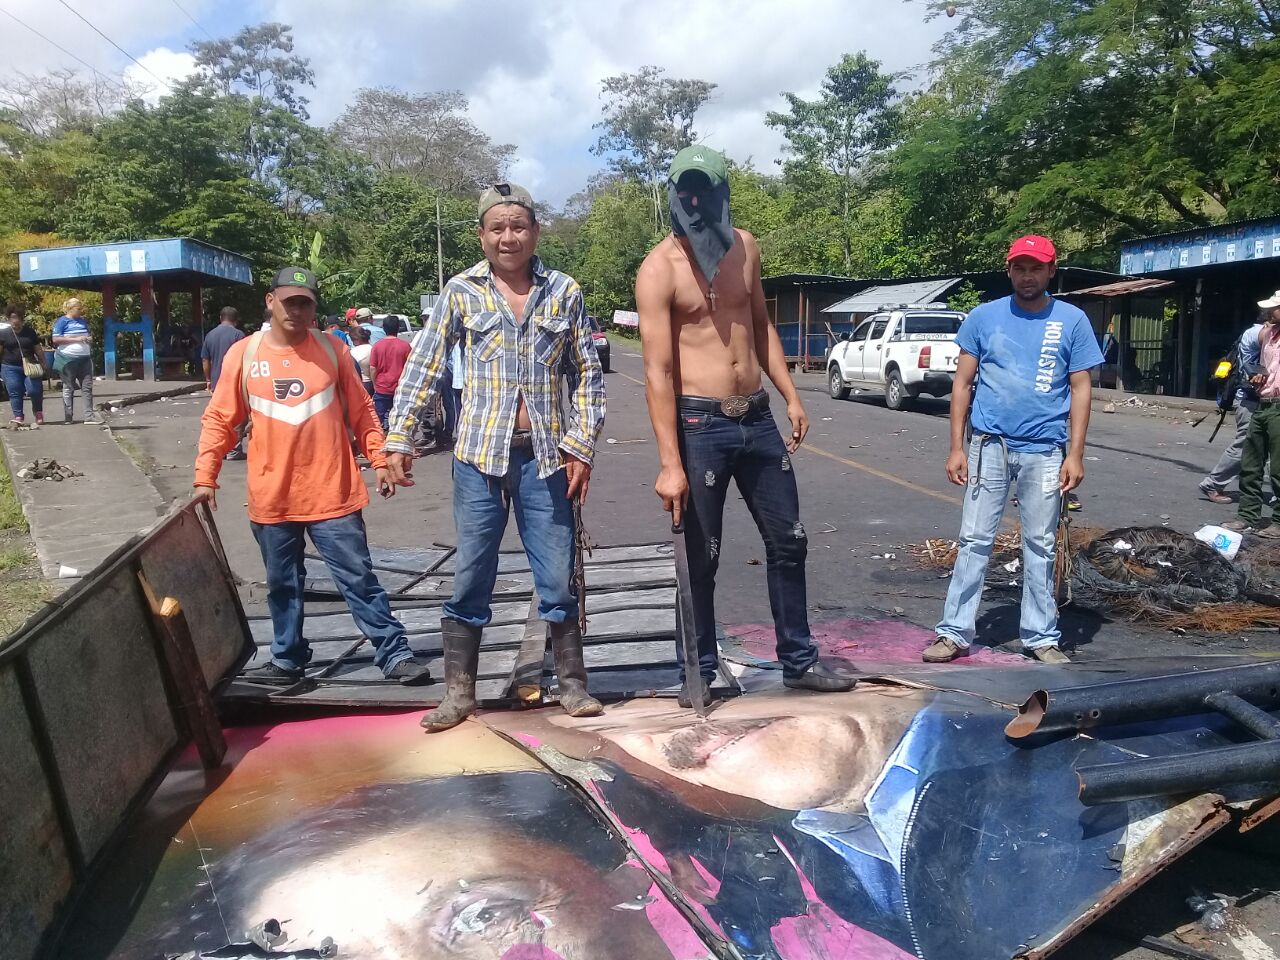 Campesino sobre rotulo de Daniel Ortega y Rosario Murillo. Fotografía: Abixael MG/Artículo66